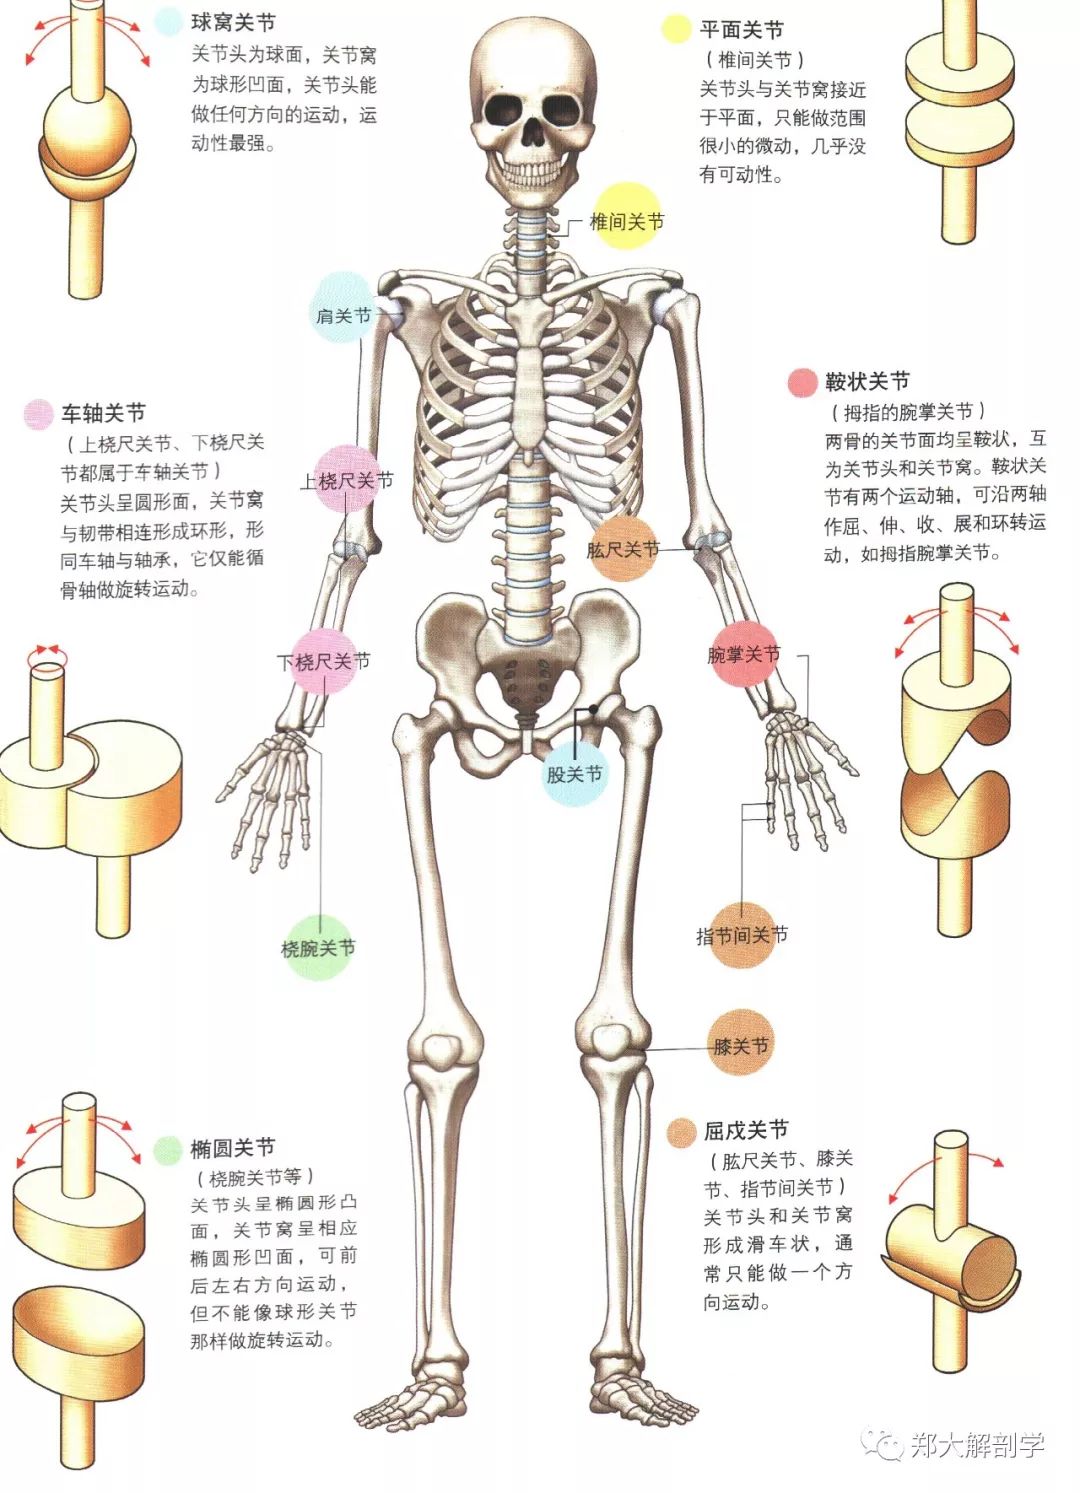 关节的主要种类以及运动方向本文相关素材来源:《3d人体解剖图》,如